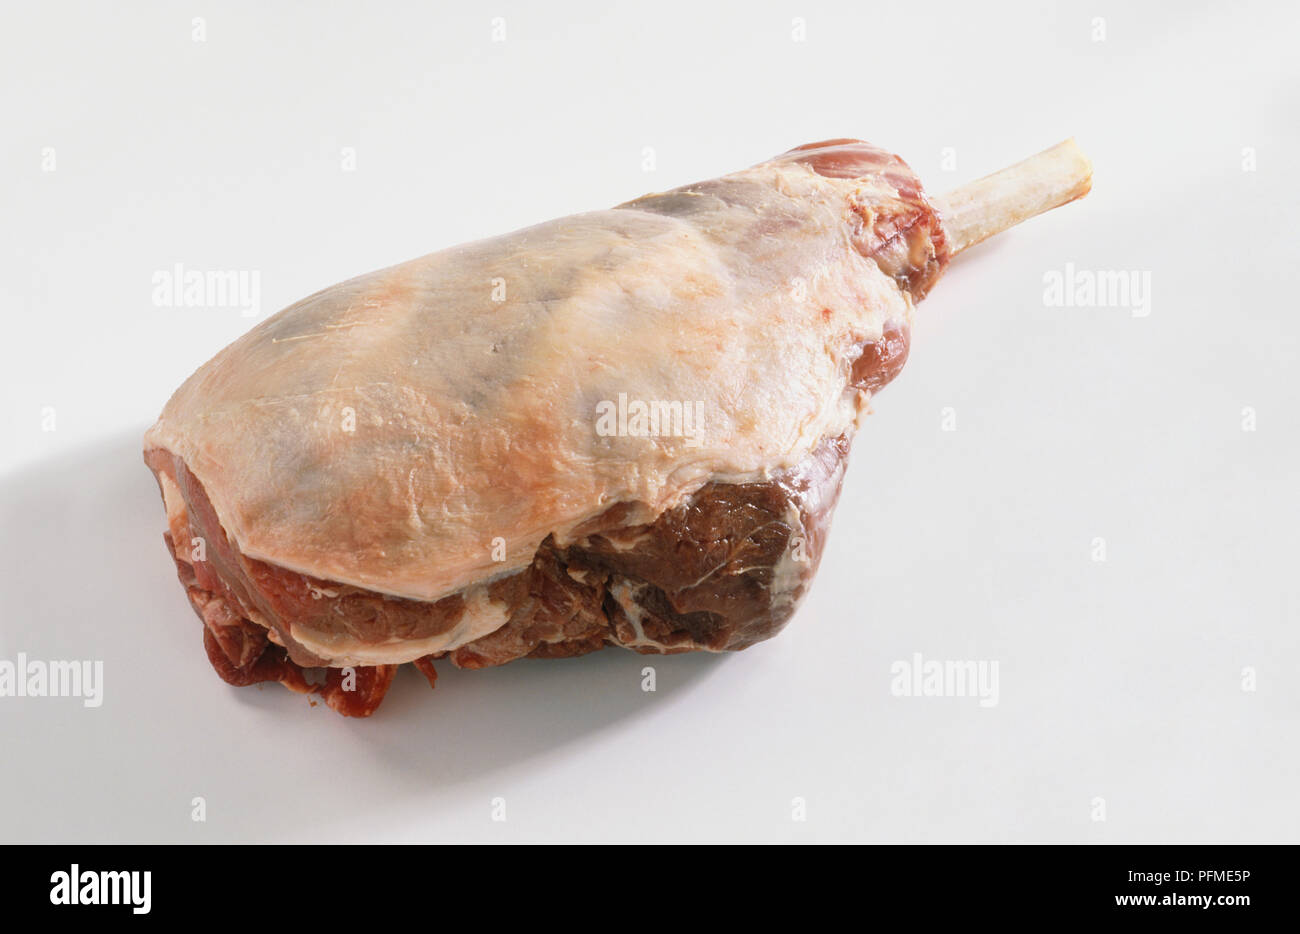 French cut Leg of Lamb Stock Photo: 216194434 - Alamy